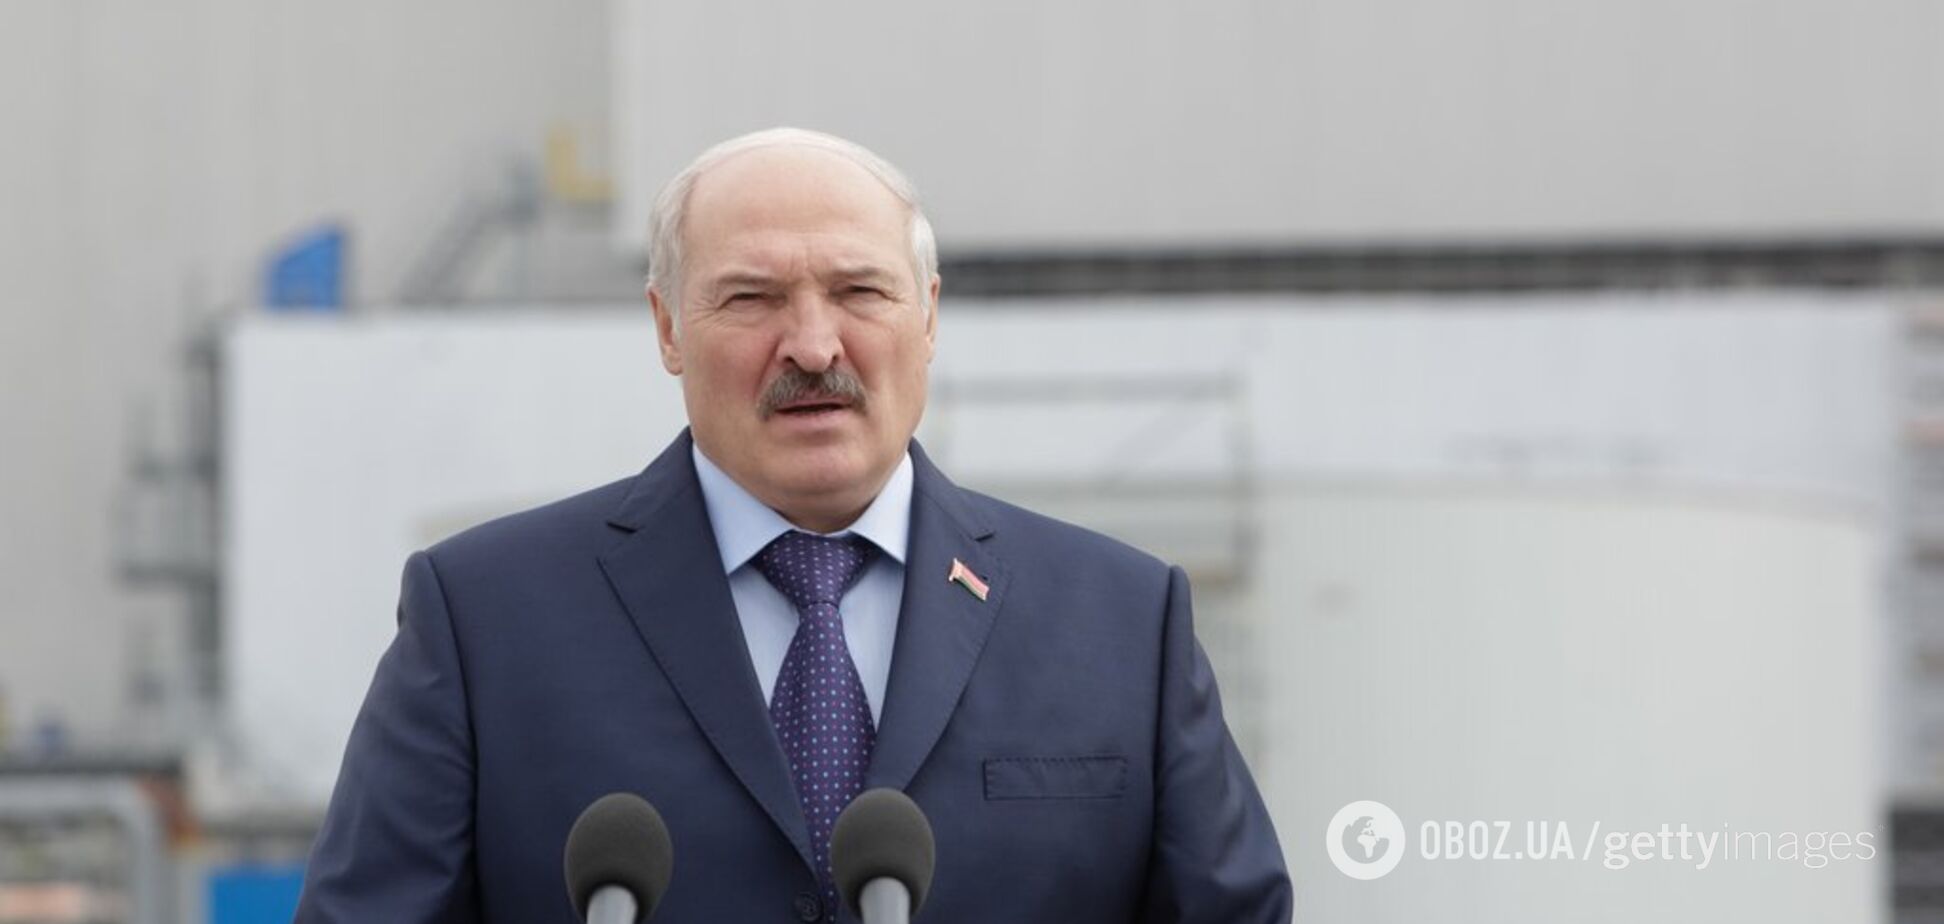 Лукашенко внезапно решил усилить границу Беларуси: что случилось